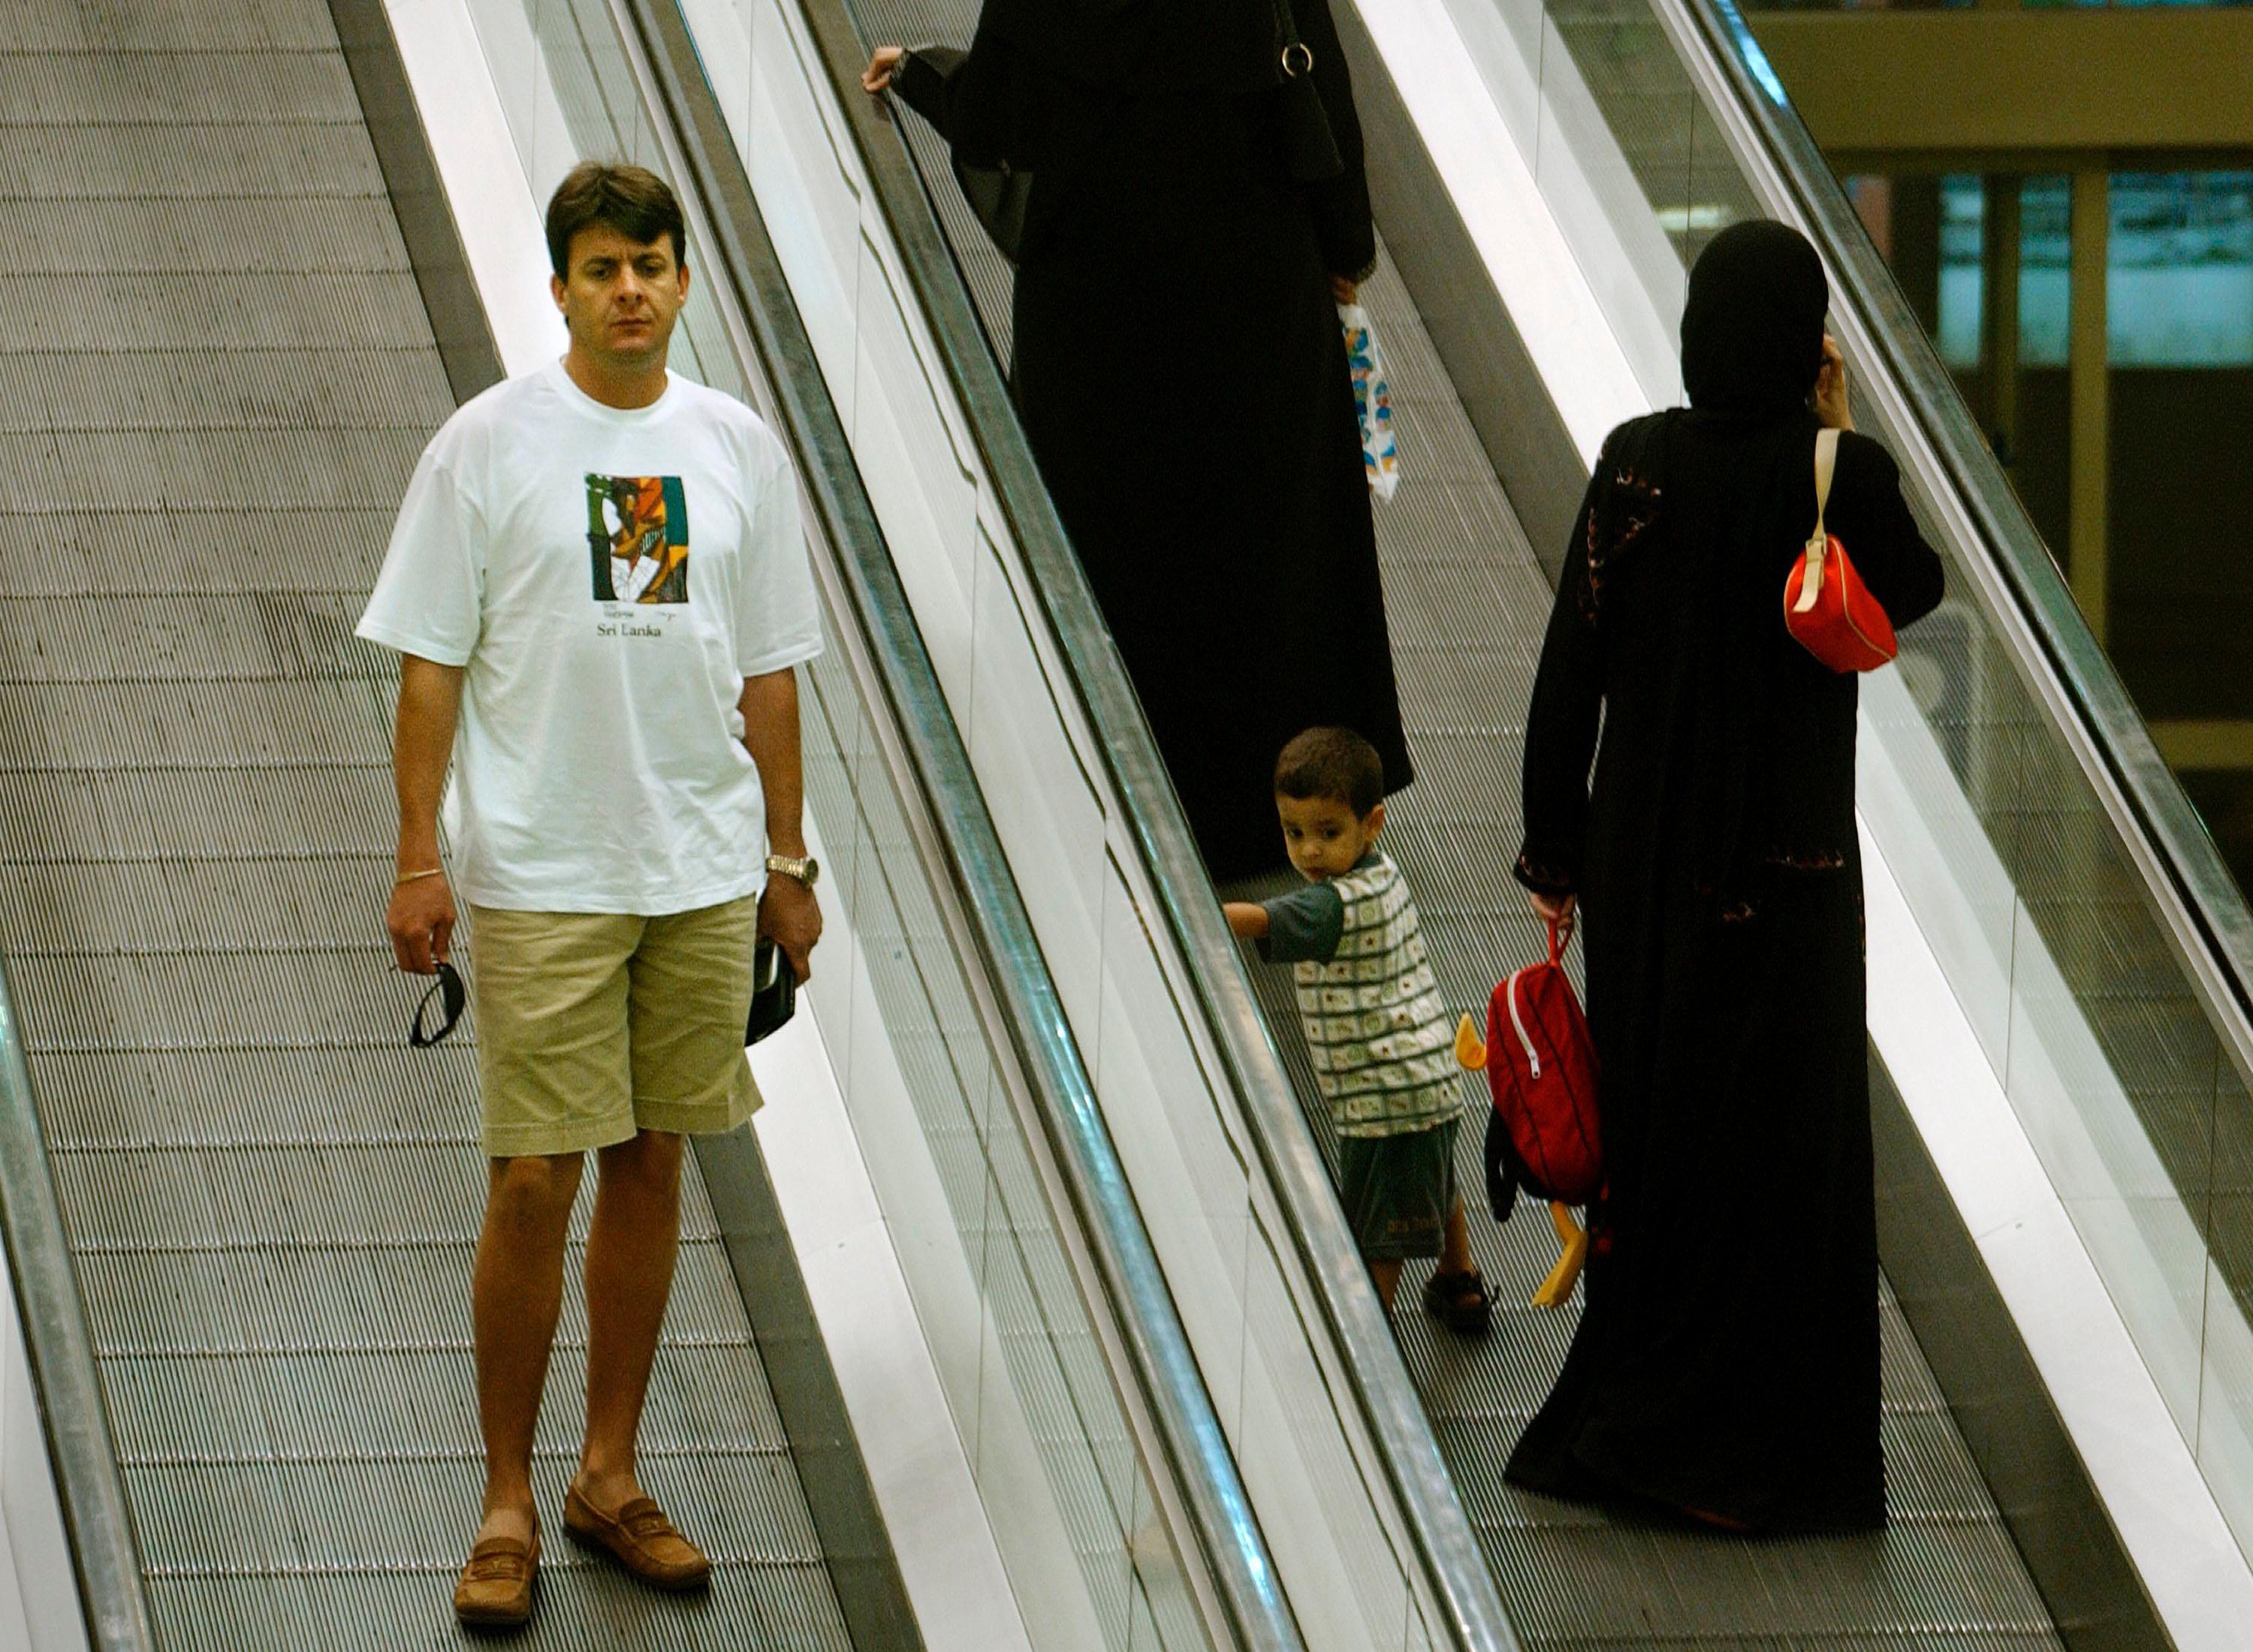 Дубай можно ли в шортах. Одежда в арабских Эмиратах туристам. Одежда для ОАЭ туристу. ОАЭ мужчины. Одежда туристов мужчин ОАЭ.